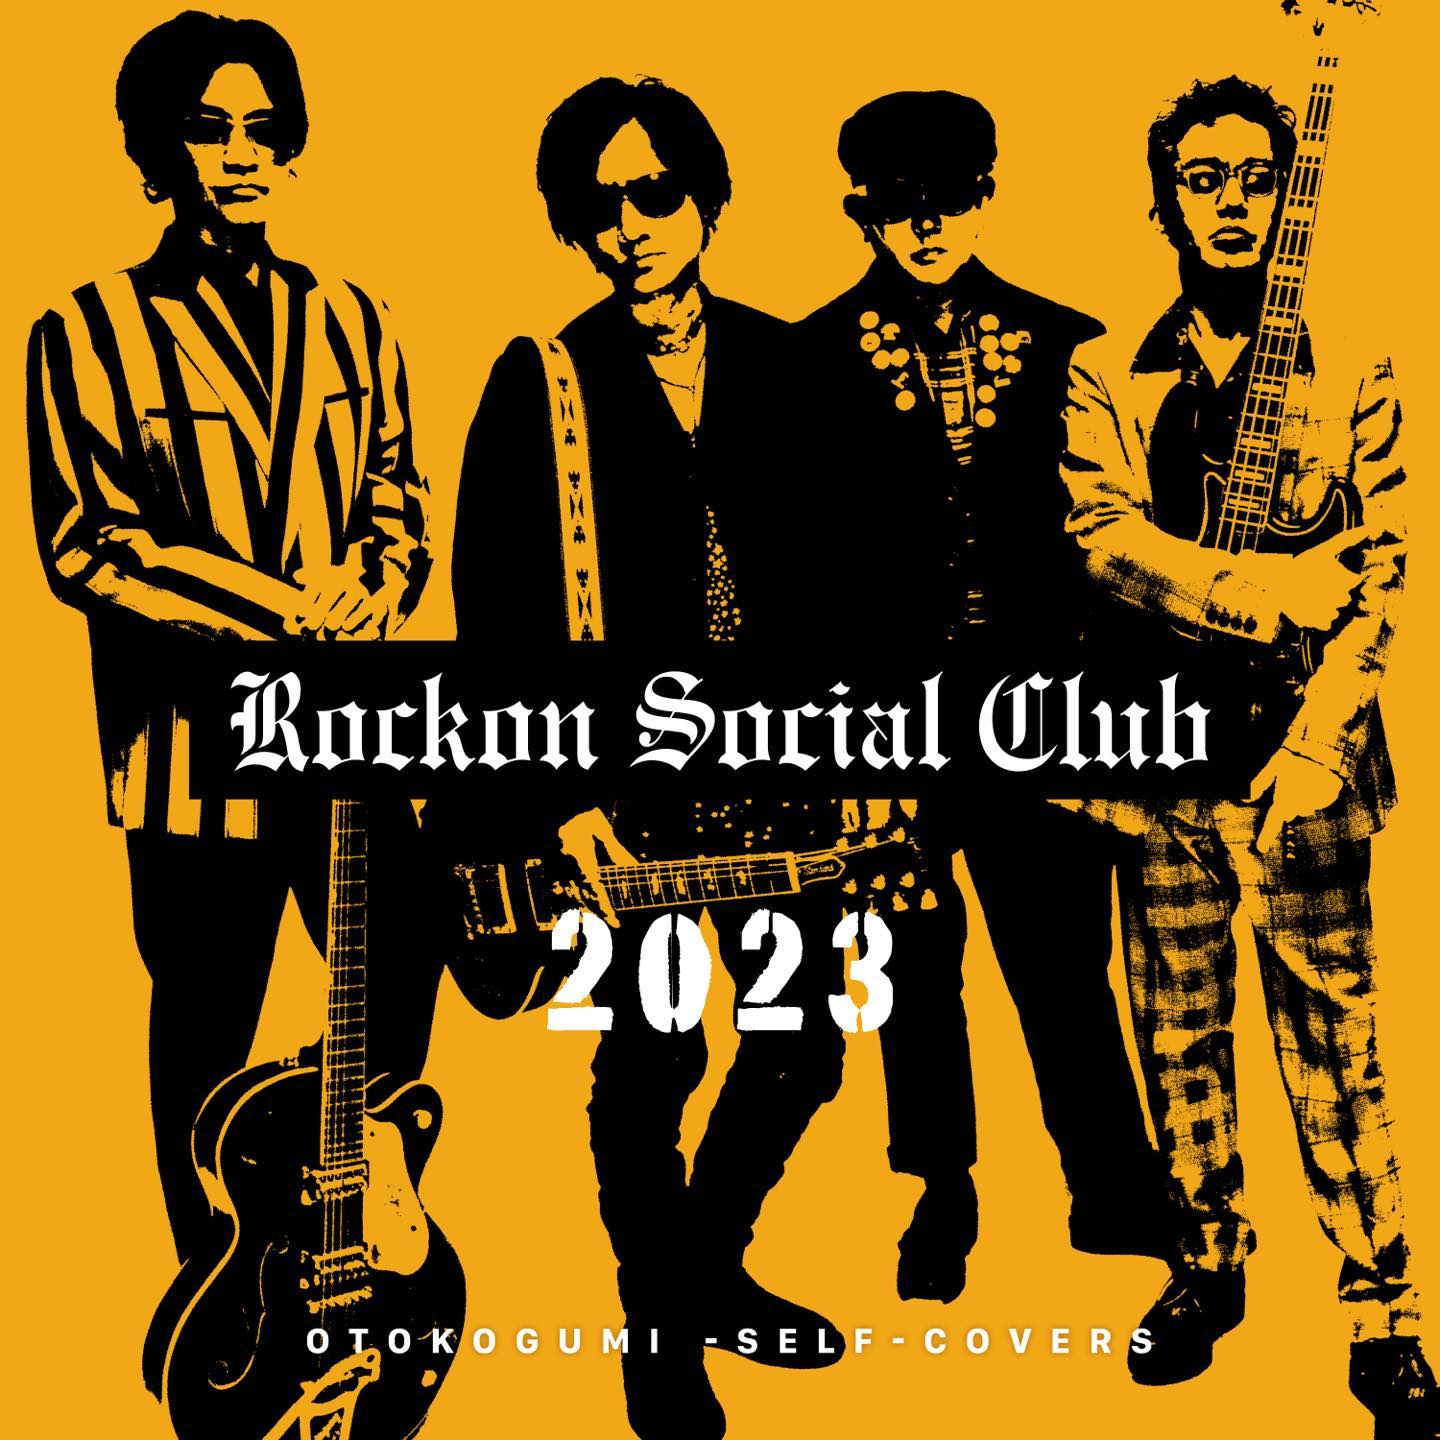 2023 - OTOKO TIMES